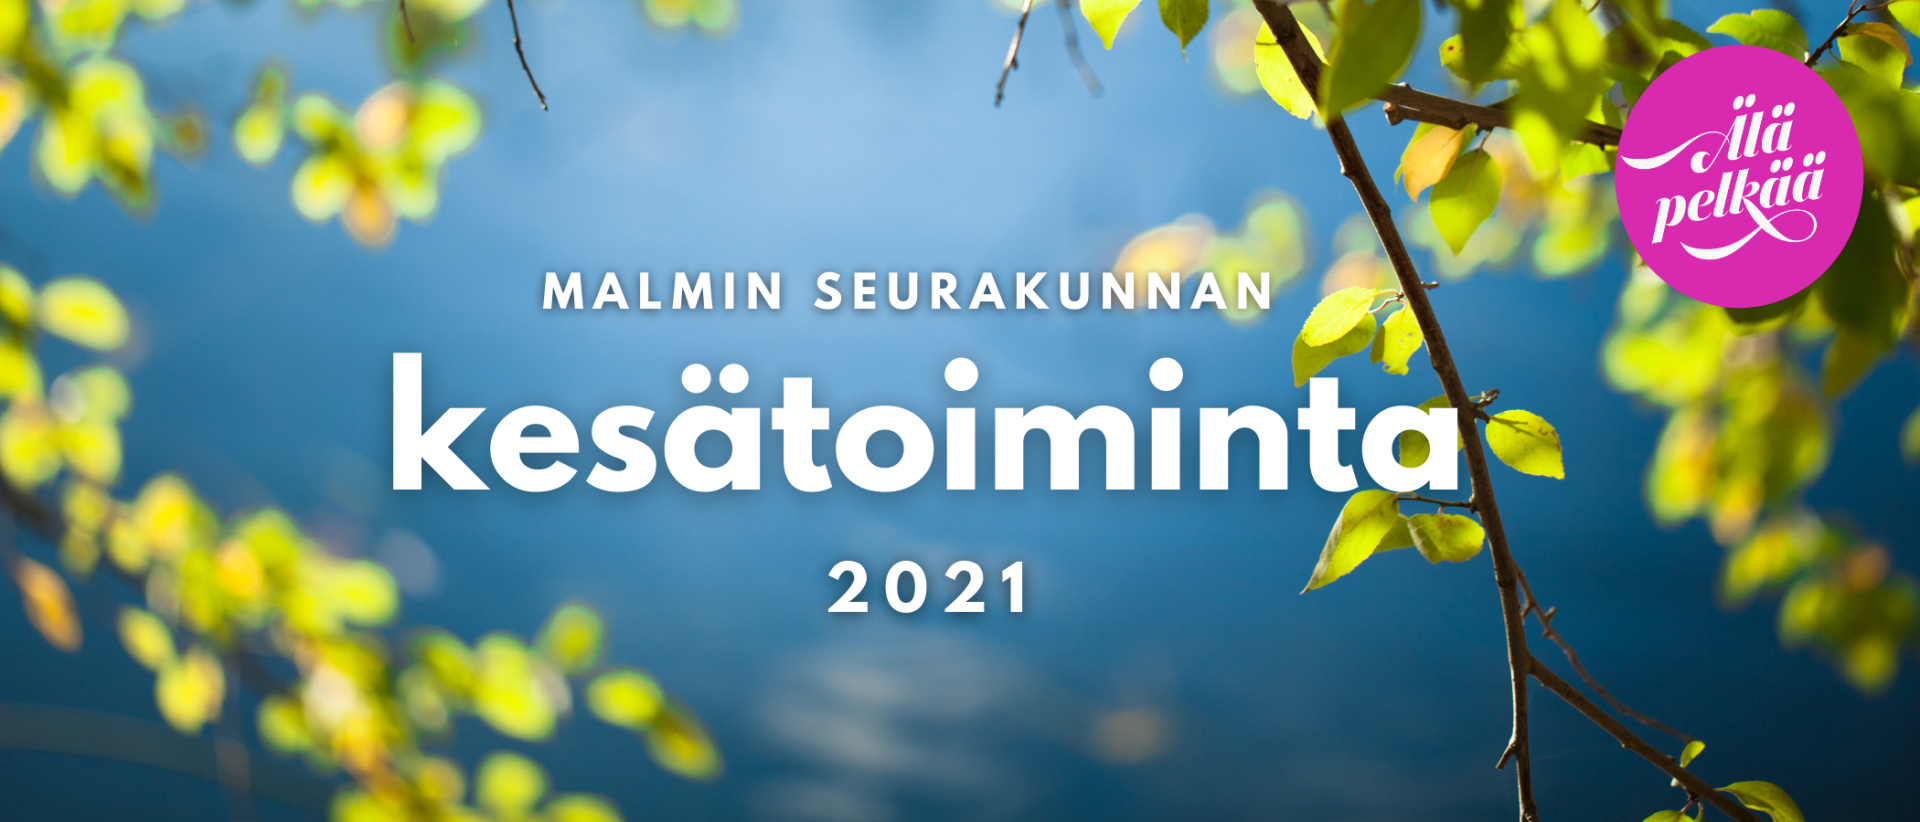 Järvimaiseman ja koivunlehtien päällä teksti: Malmin seurakunnan kesätoiminta 2021. Älä pelkää-